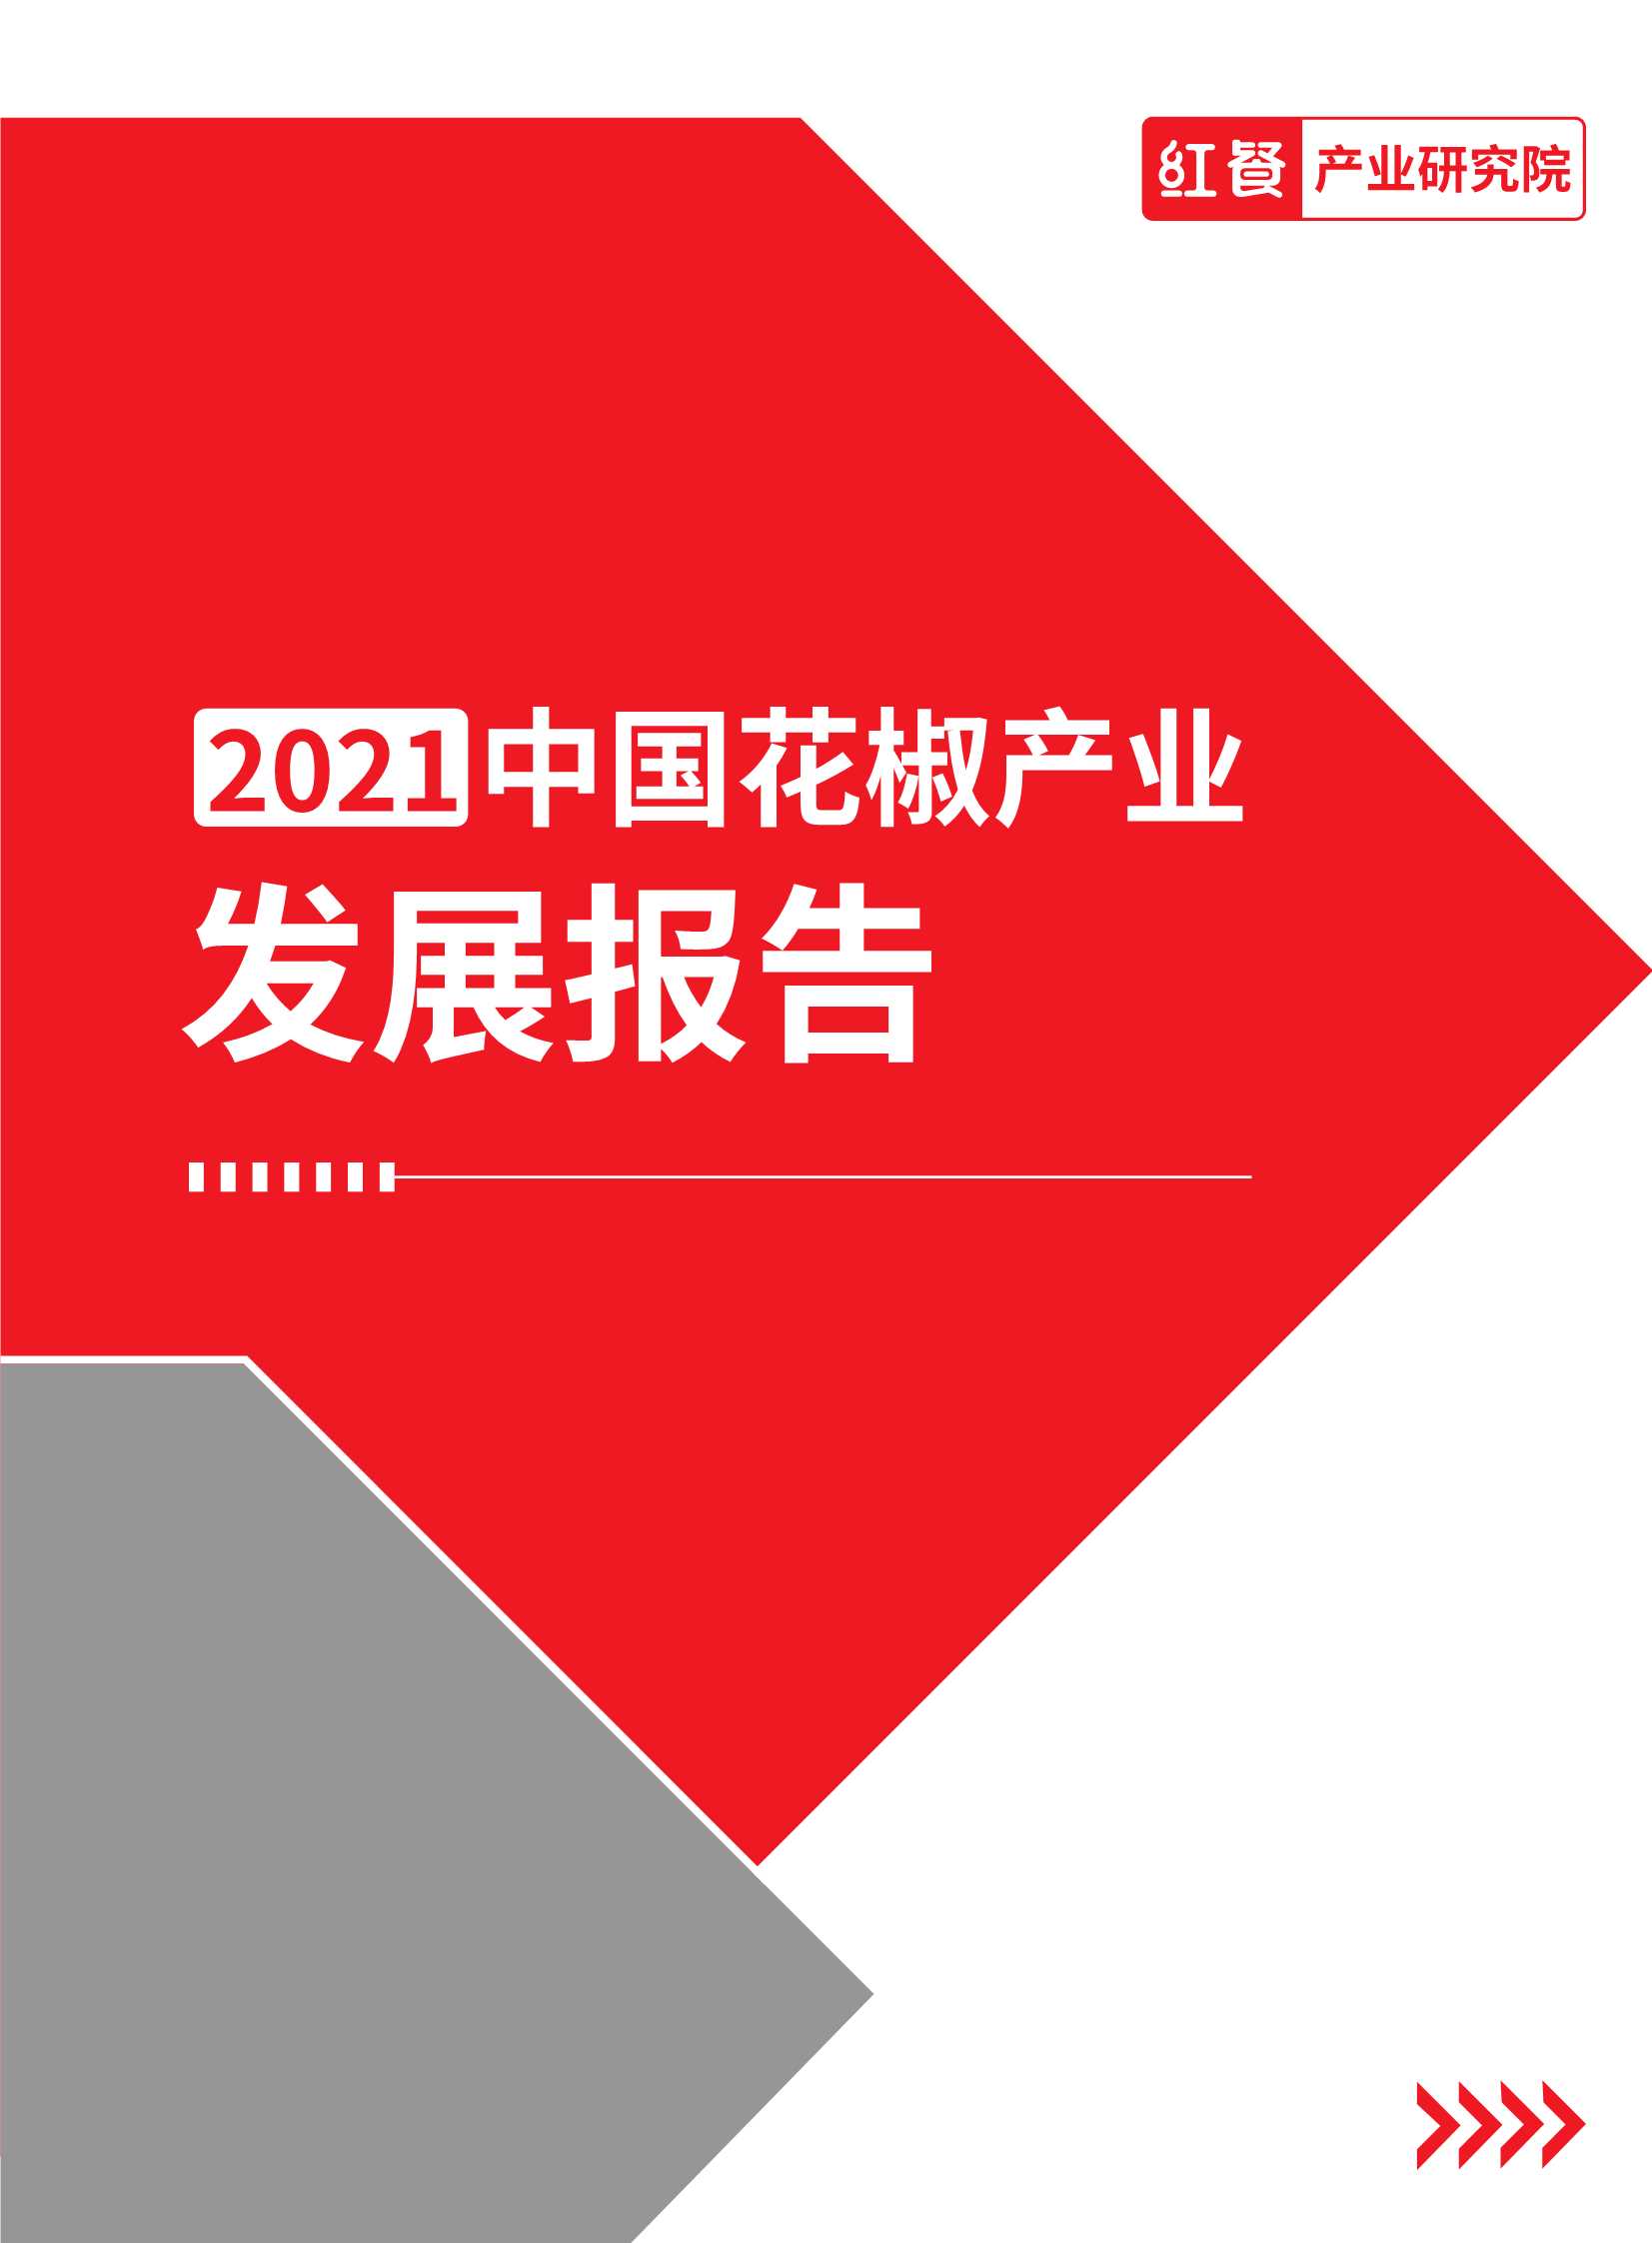 红餐-2021花椒产业发展报告-2021.11-22页